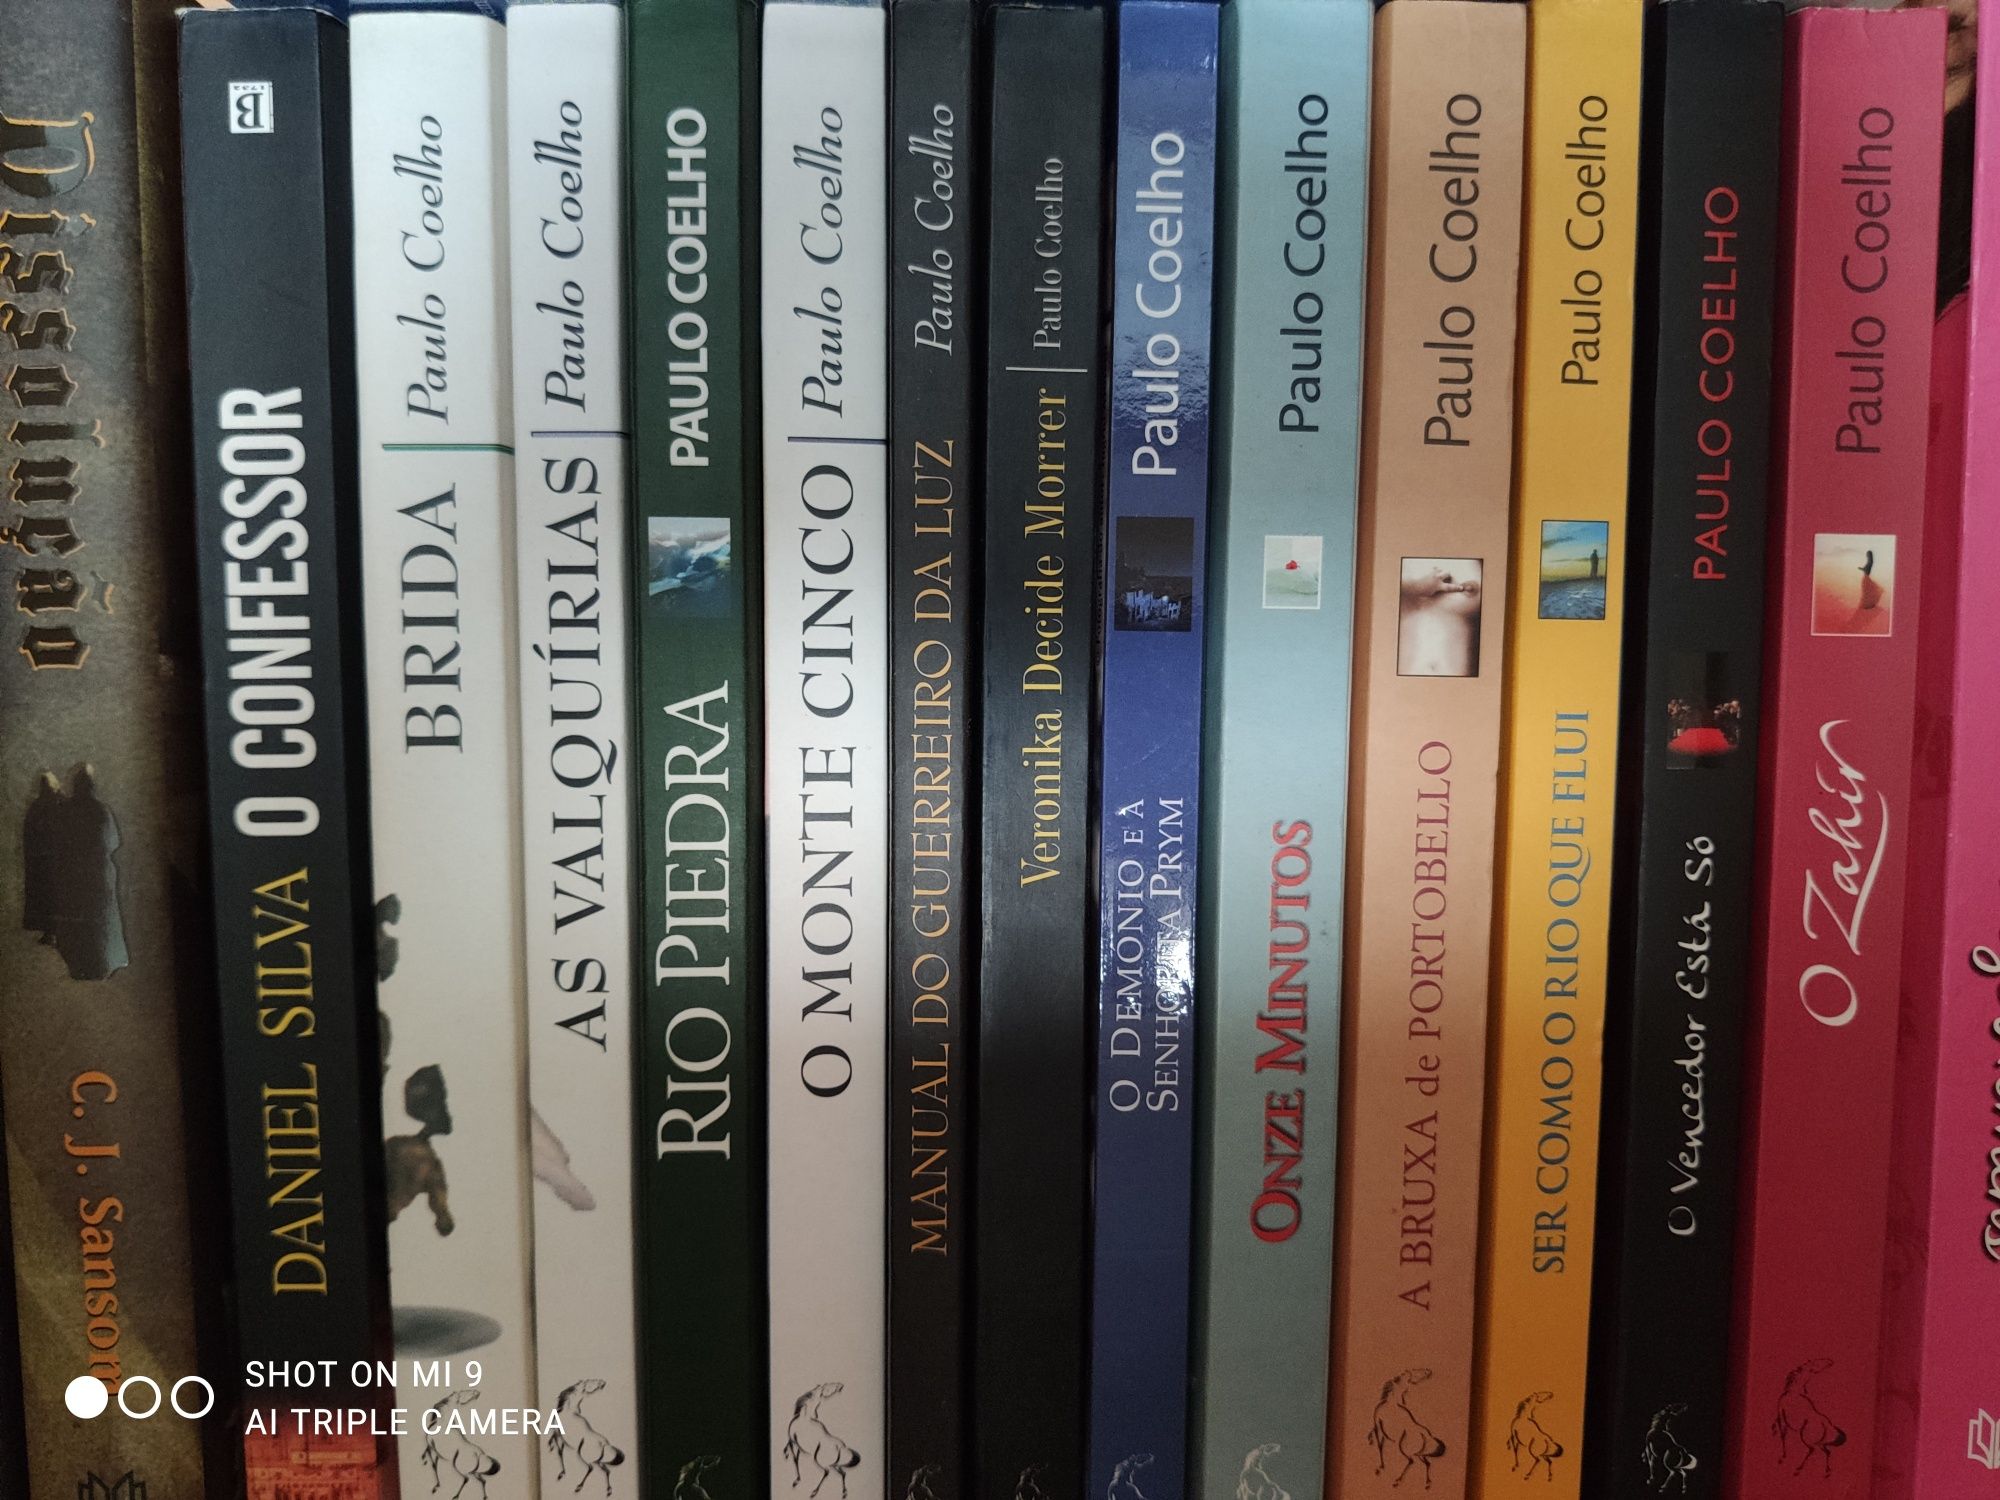 Livros variados - autores nacionais e estrangeiros